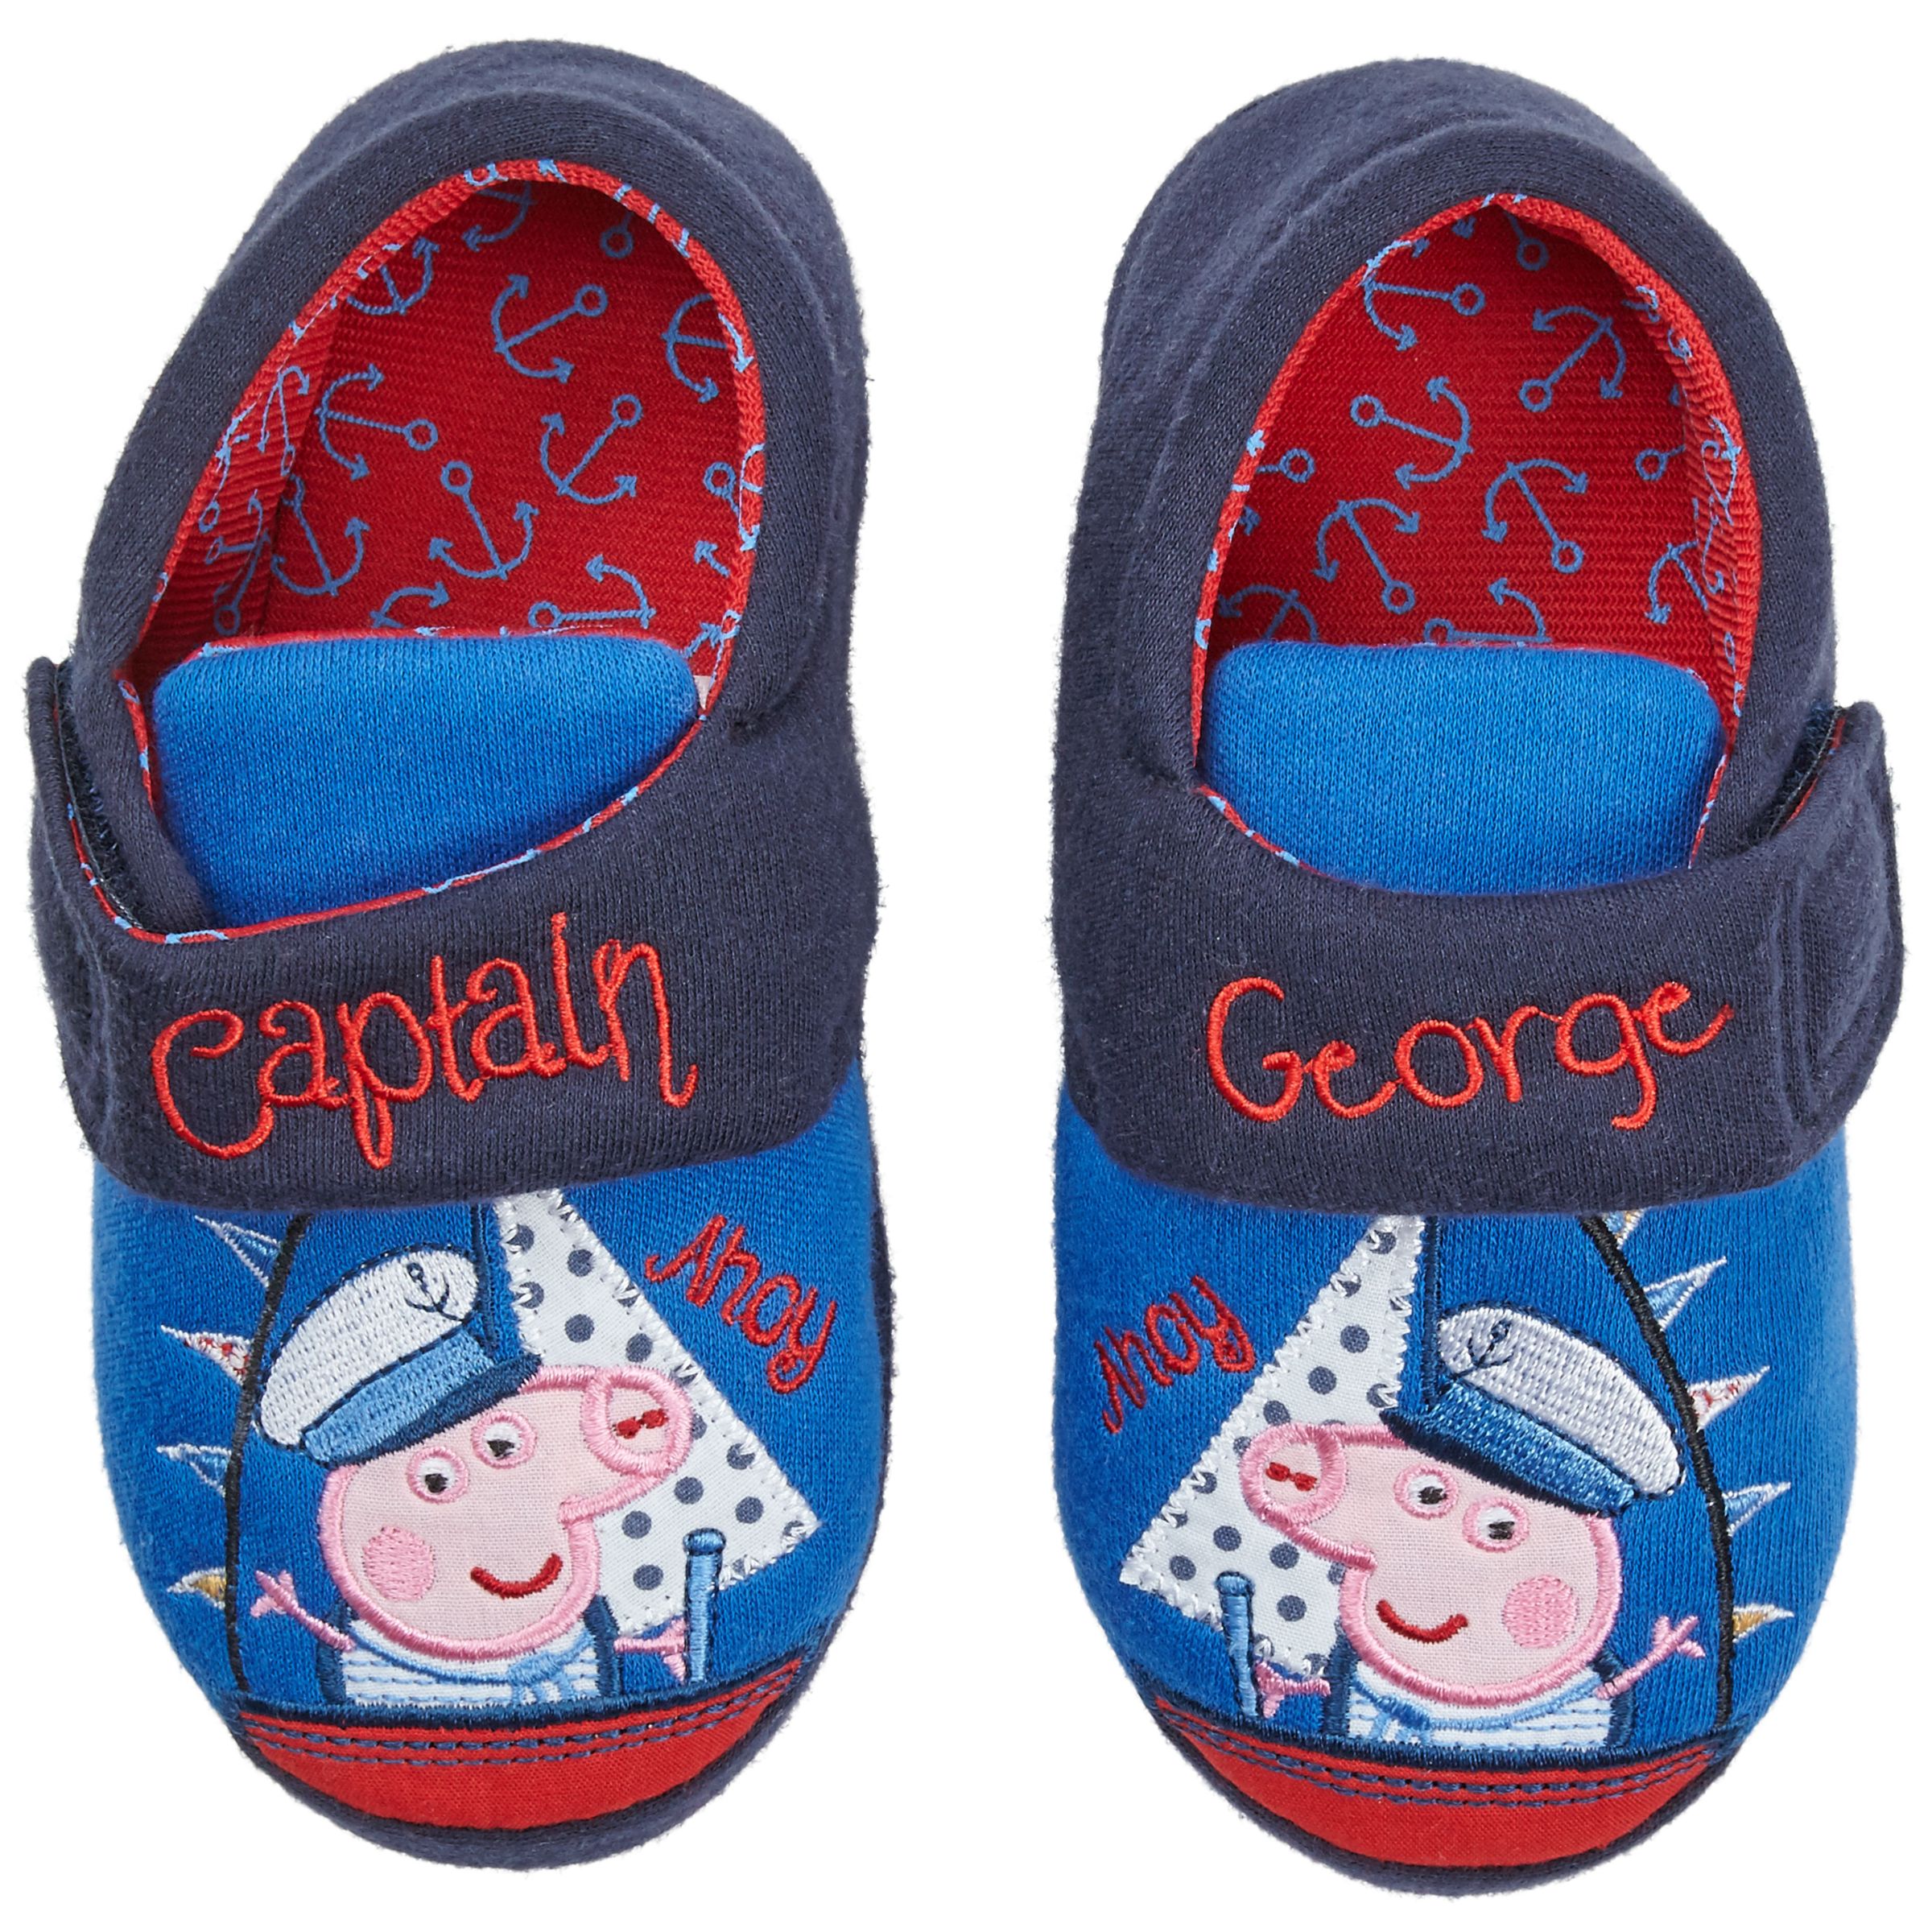 peppa pig george shoes